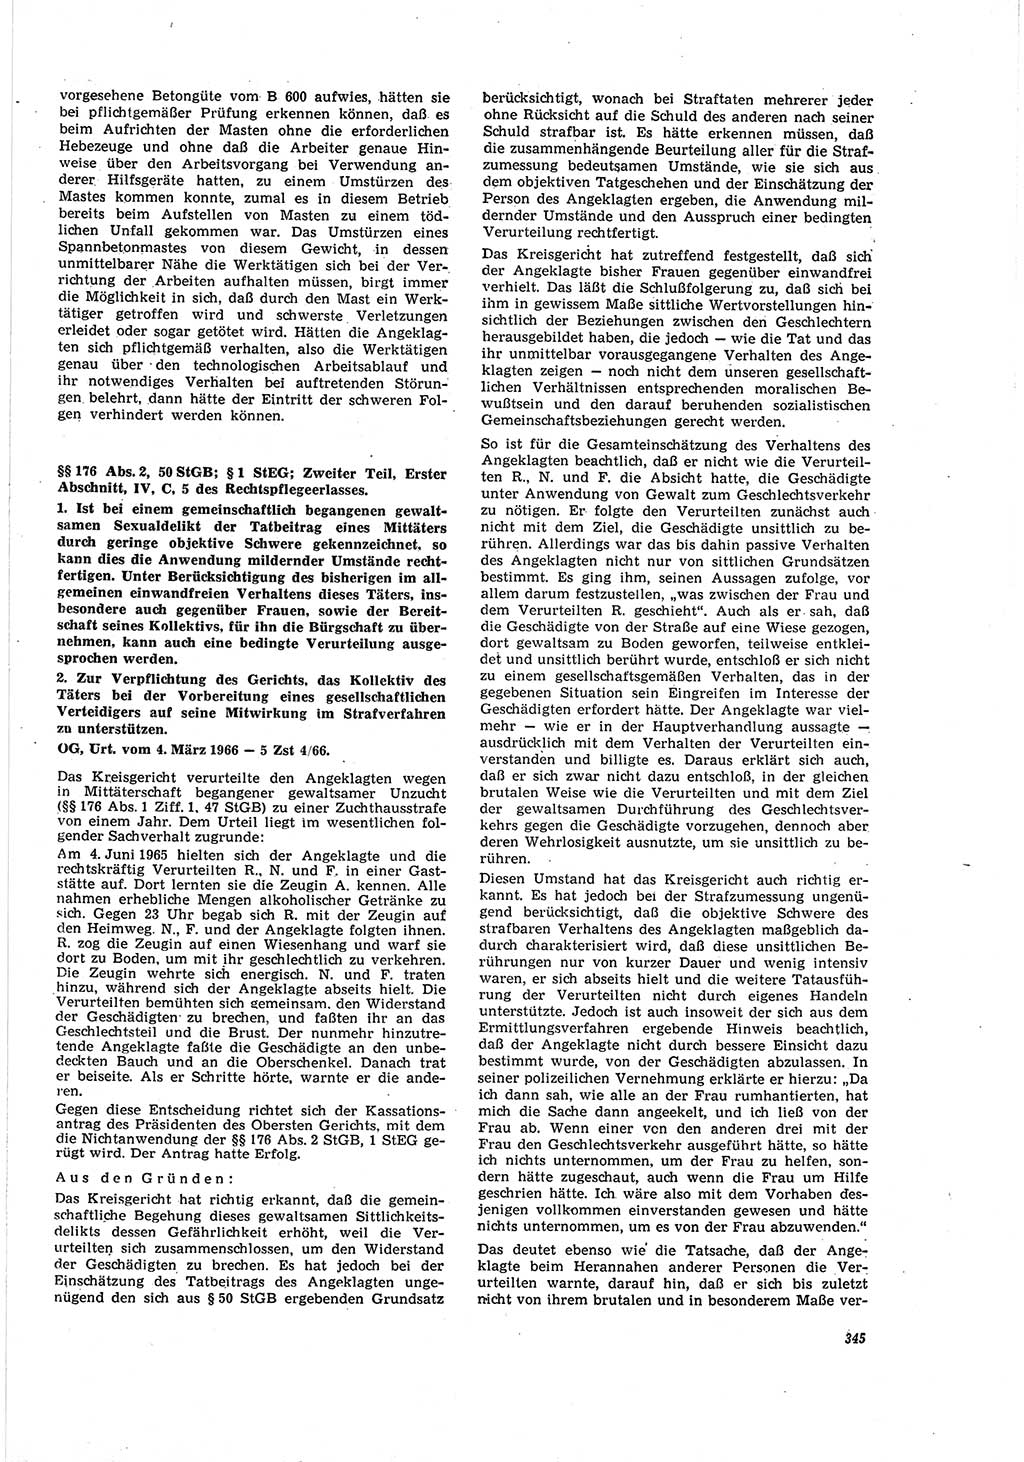 Neue Justiz (NJ), Zeitschrift für Recht und Rechtswissenschaft [Deutsche Demokratische Republik (DDR)], 20. Jahrgang 1966, Seite 345 (NJ DDR 1966, S. 345)